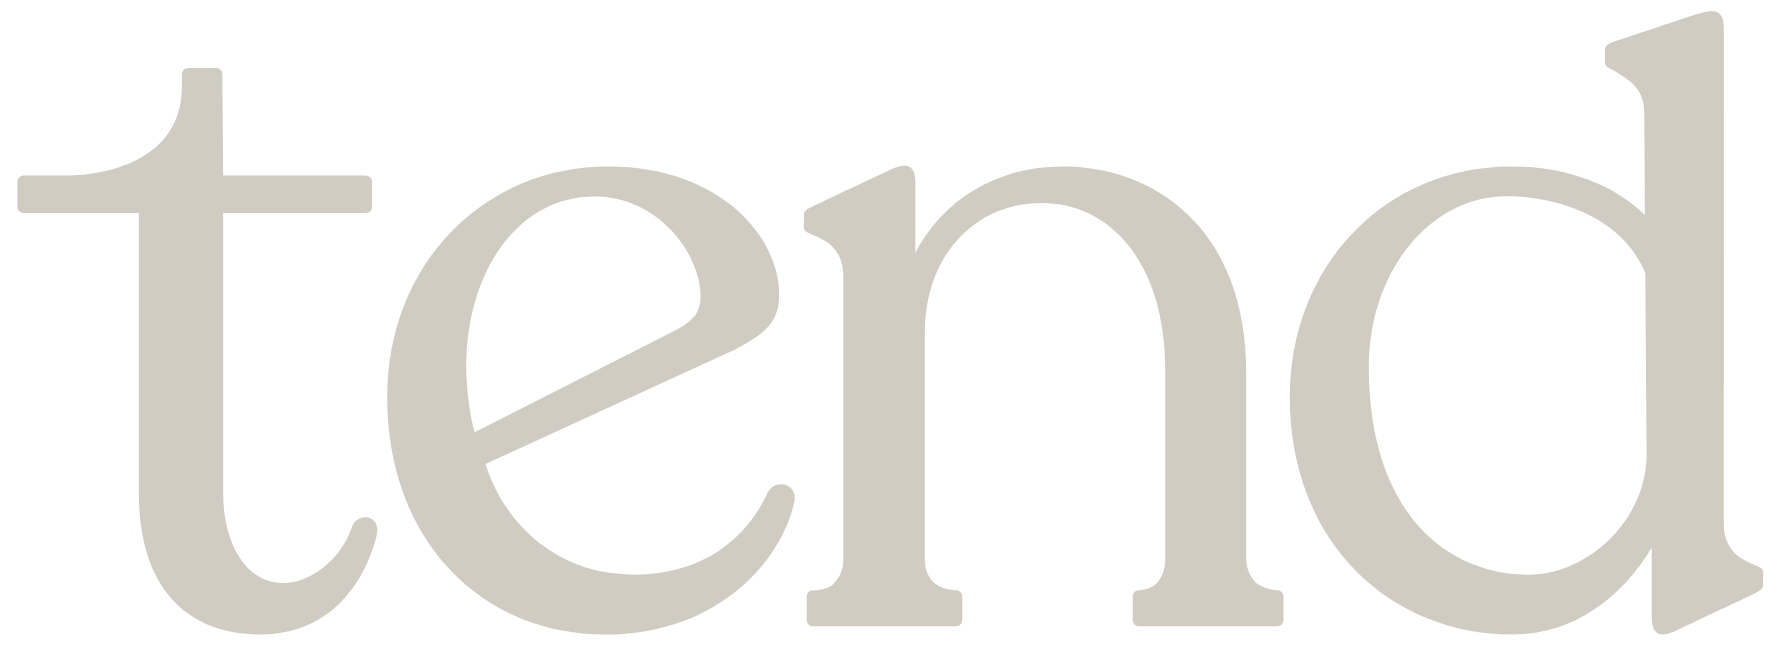 CFO Logo - Tend